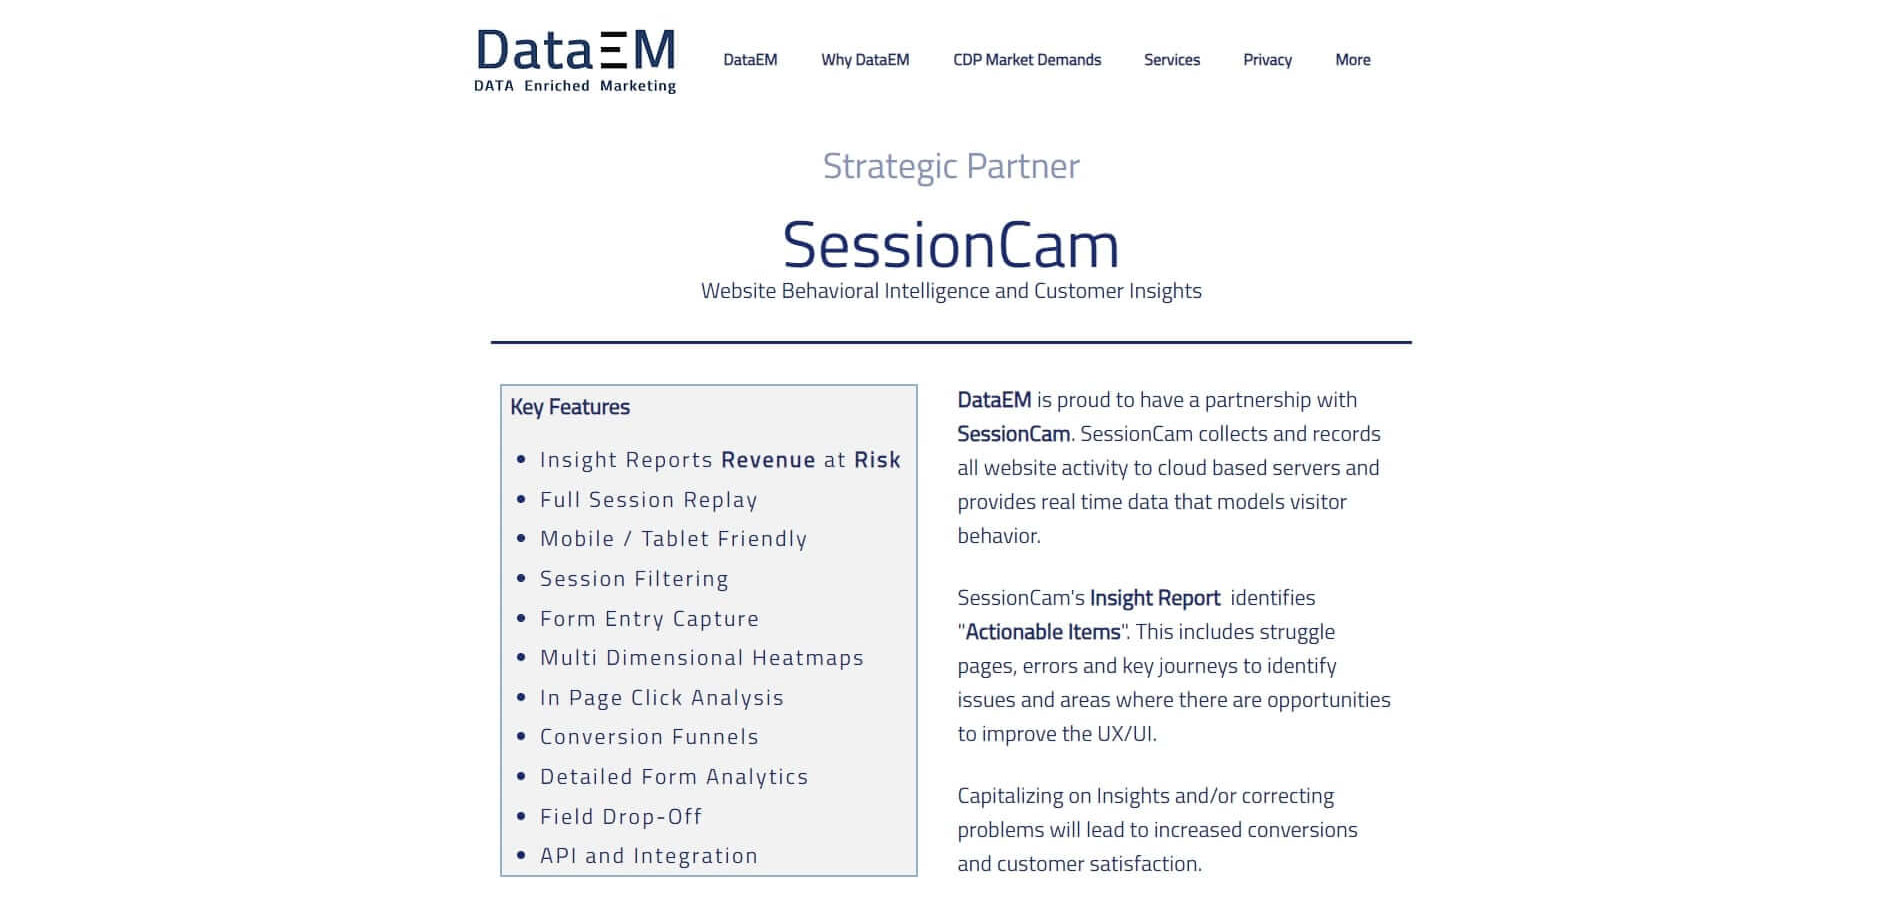 DataEM SessionCam